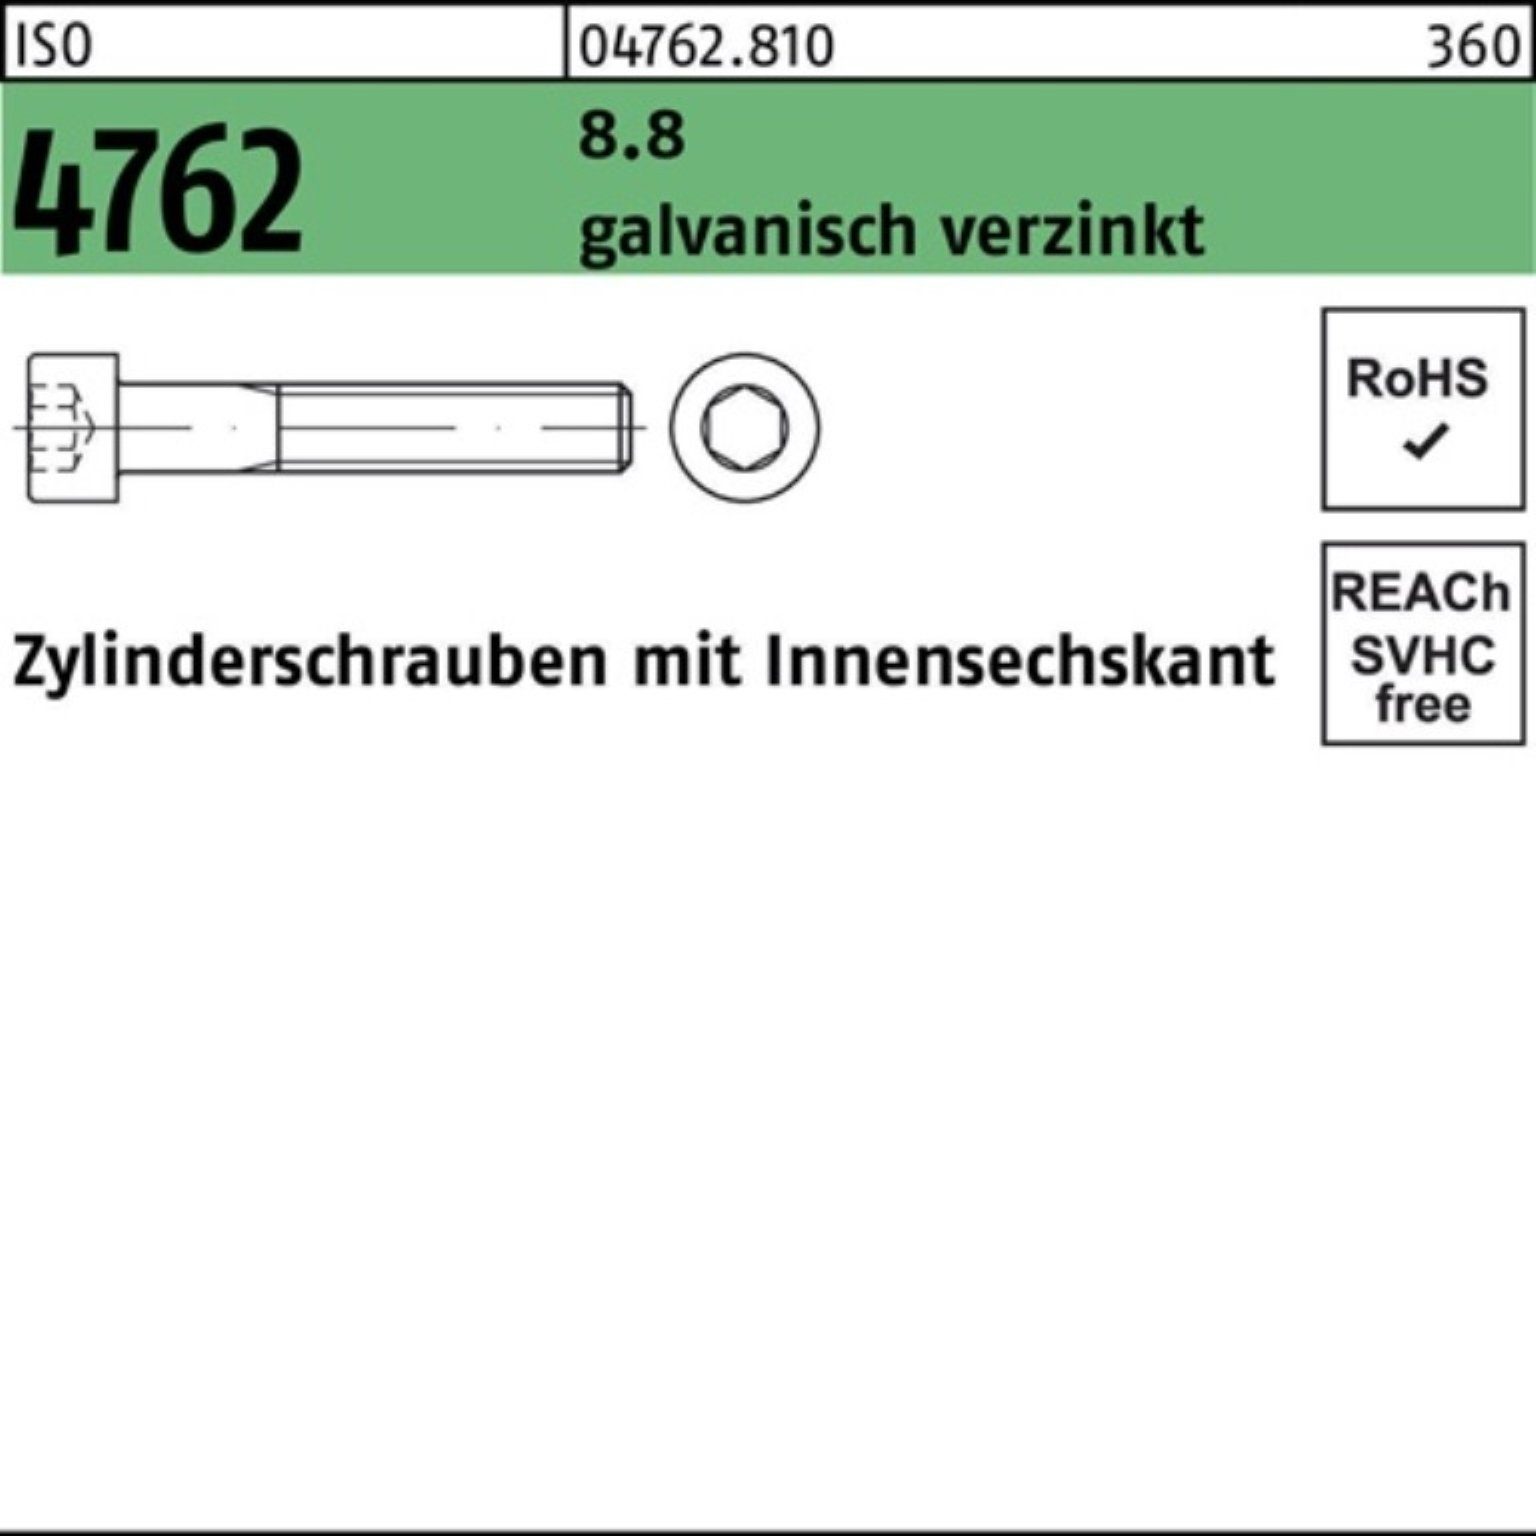 1 Zylinderschraube Pack 4762 100er galv.verz. Zylinderschraube Innen-6kt M6x230 Reyher ISO 8.8